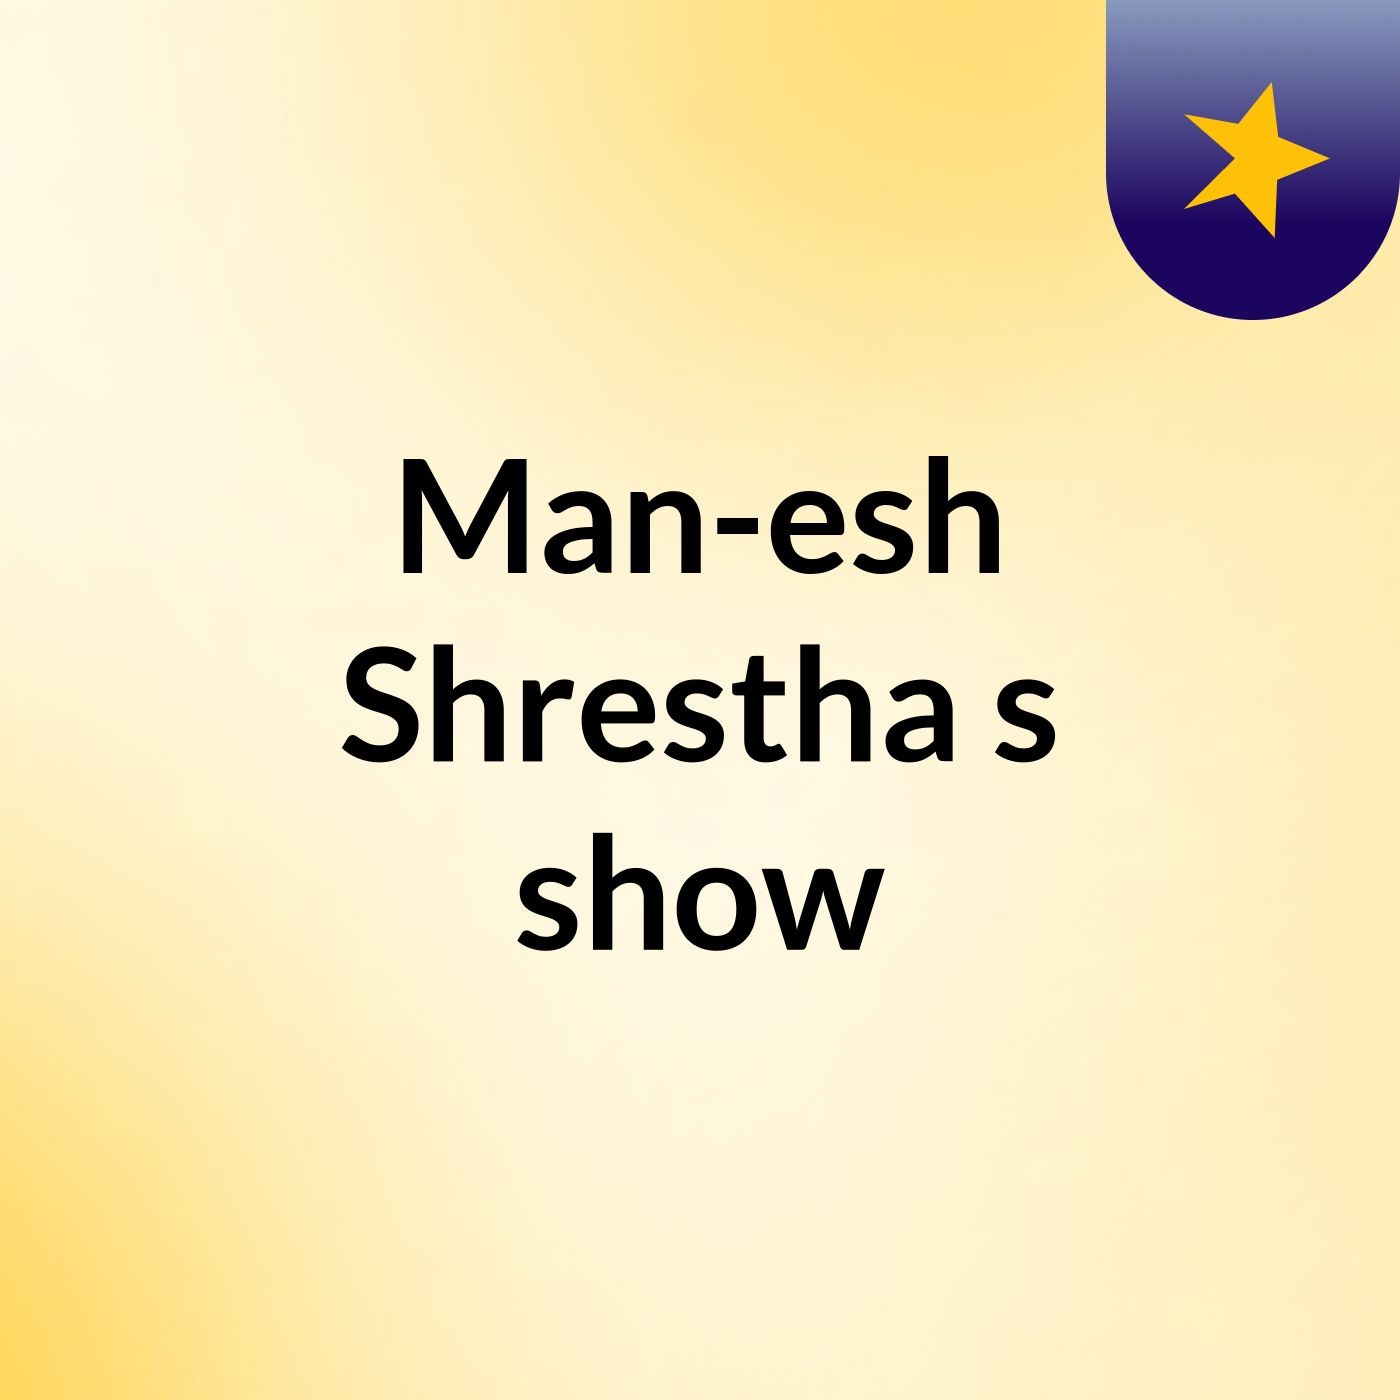 Man-esh Shrestha's show